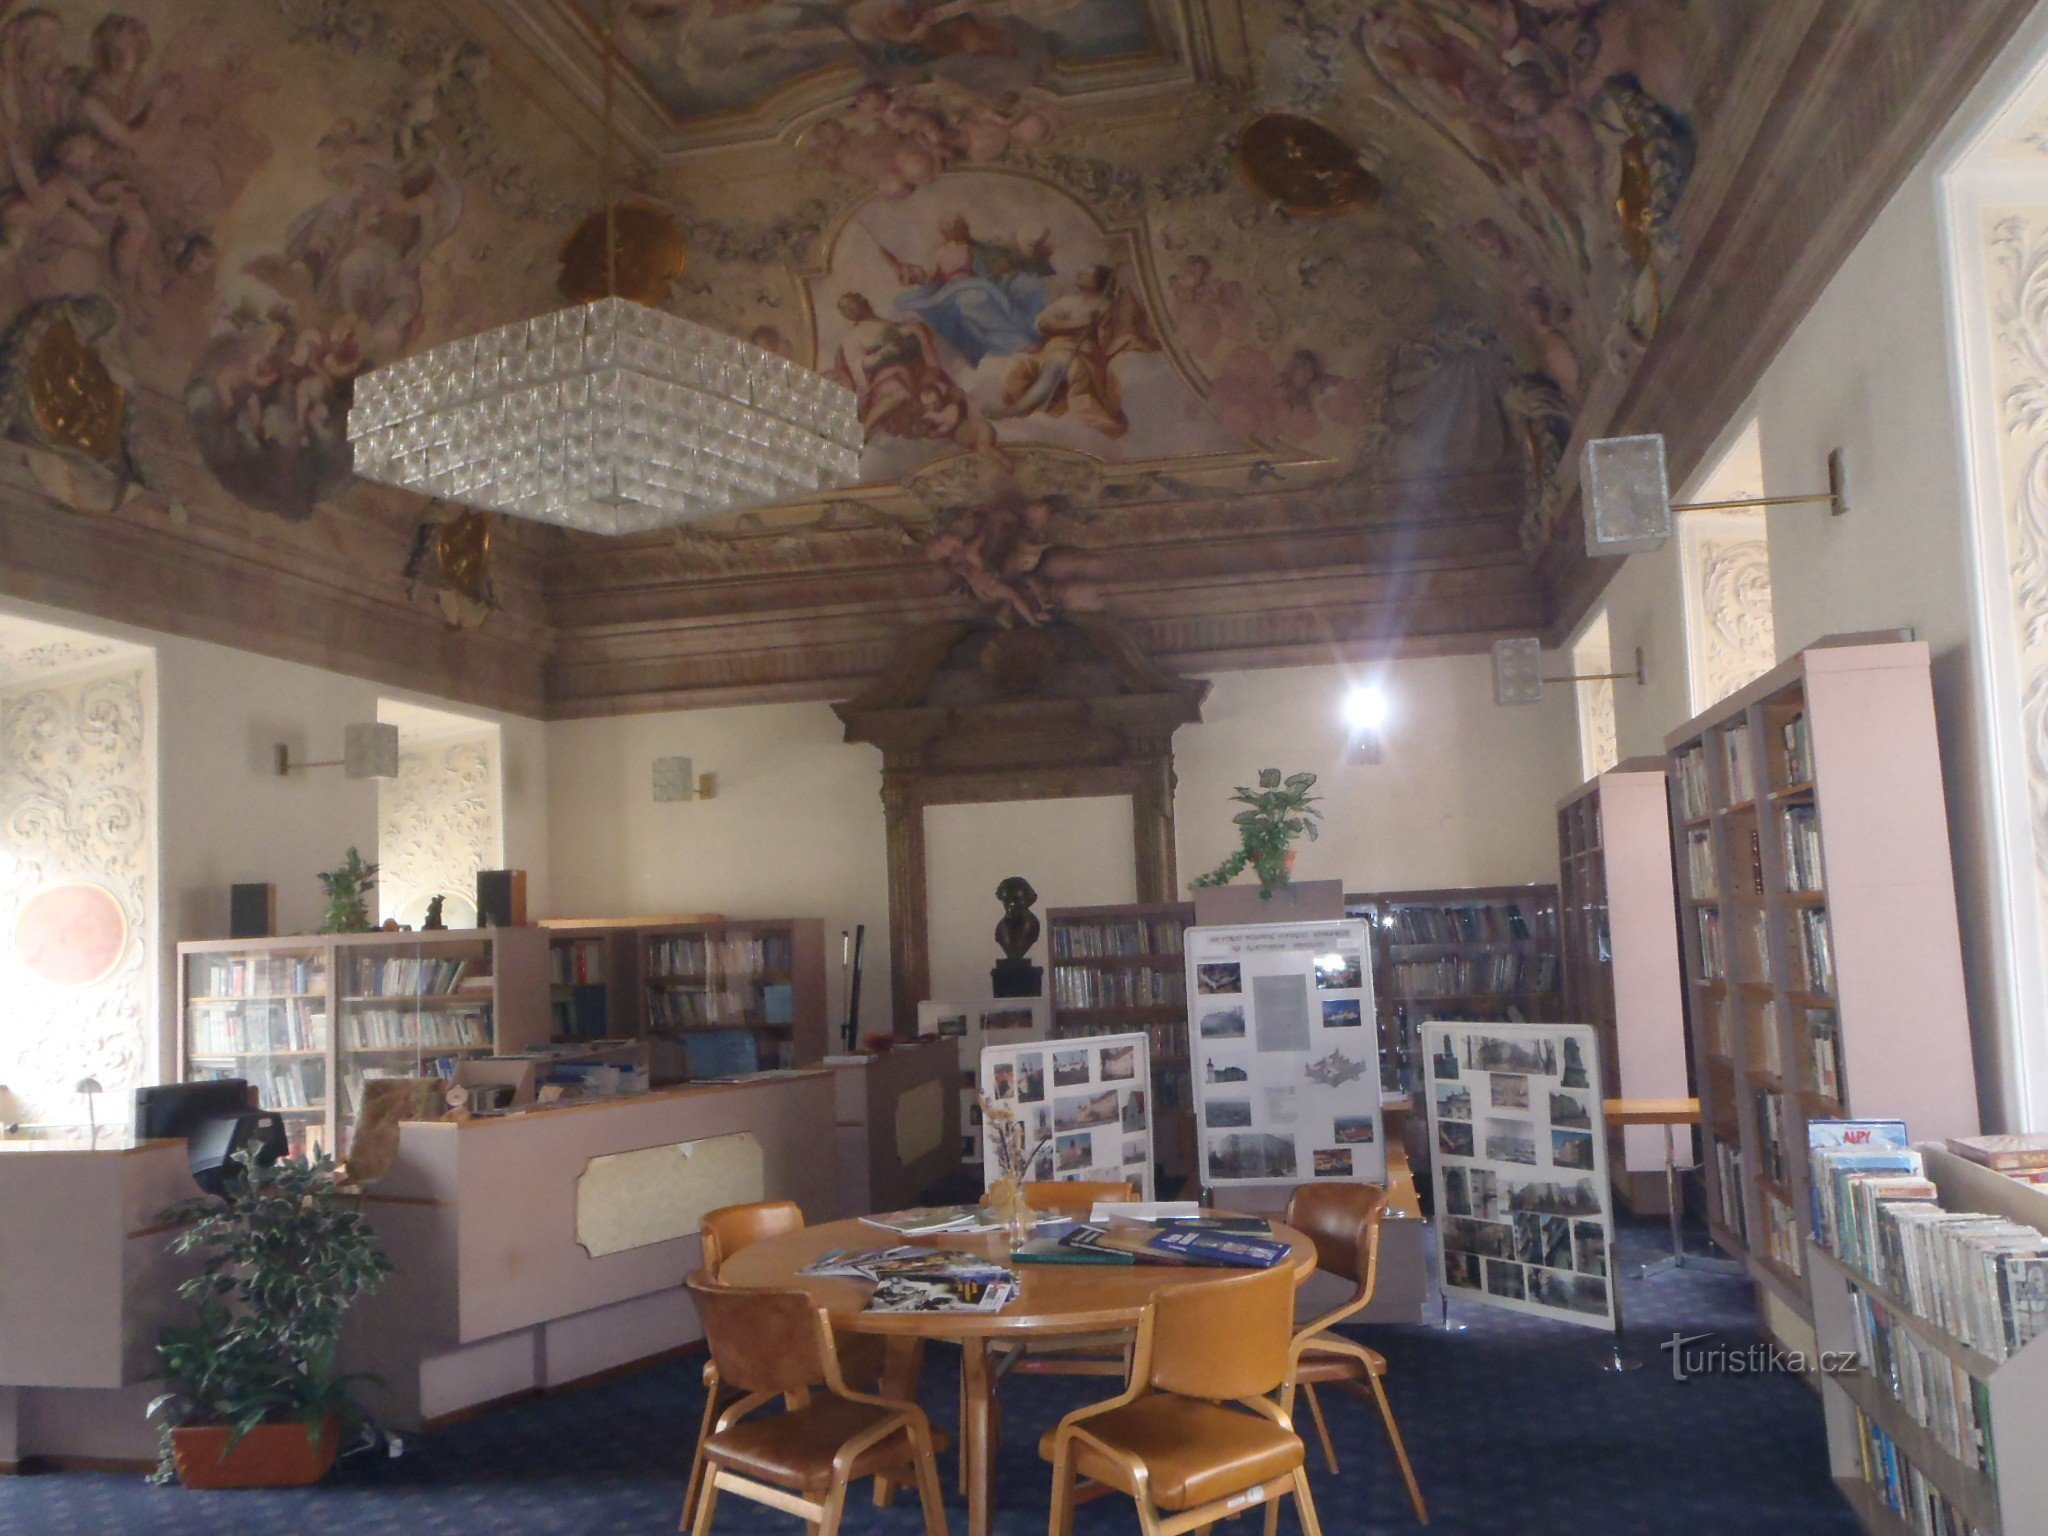 Kloster bibliotek